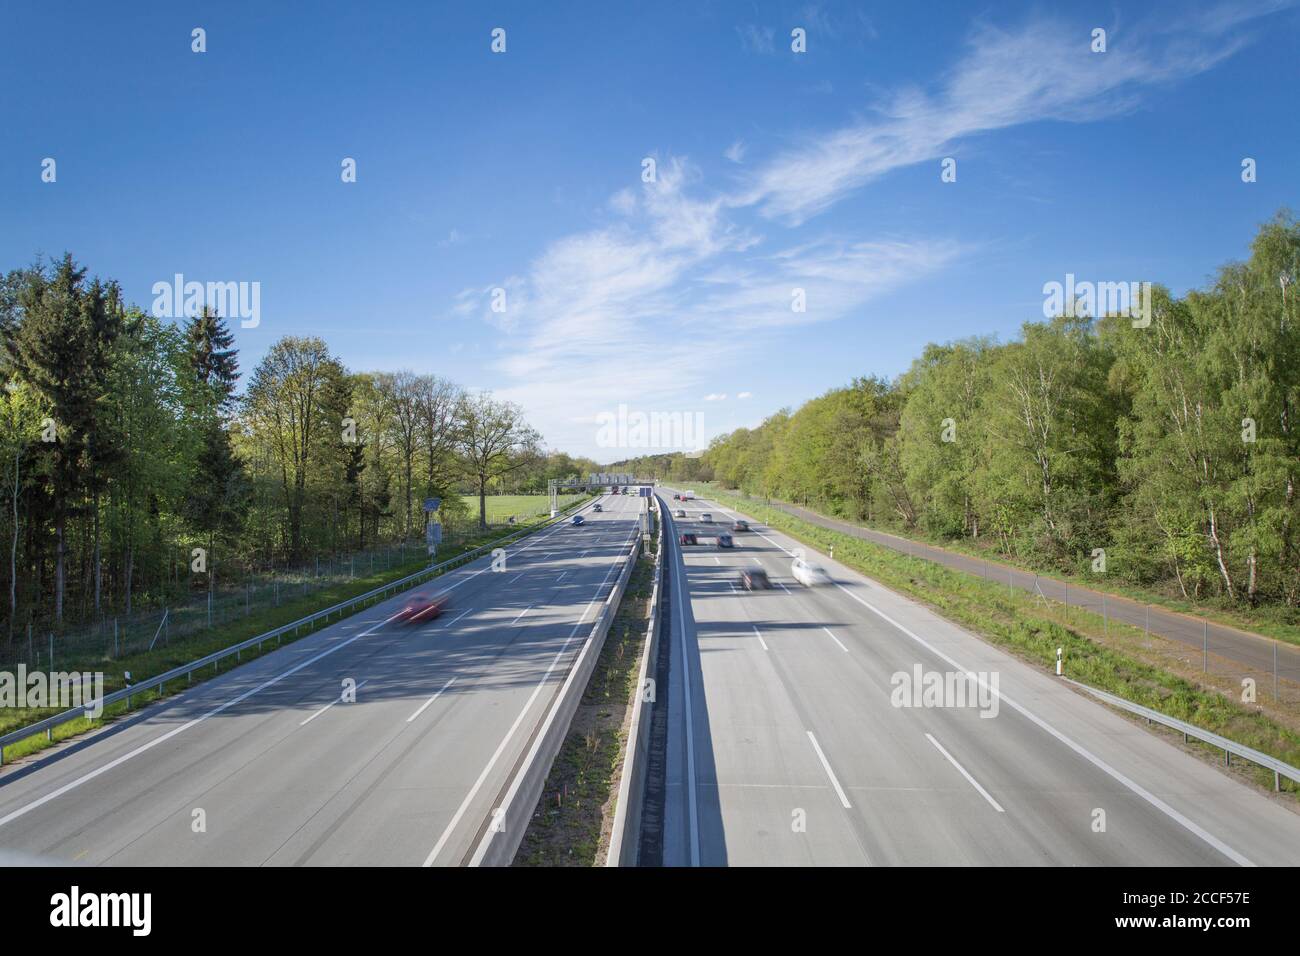 Autobahn A7 mit Fahrzeugen bei schönem Sommerwetter, nahe Hamburg, Deutschland Stockfoto